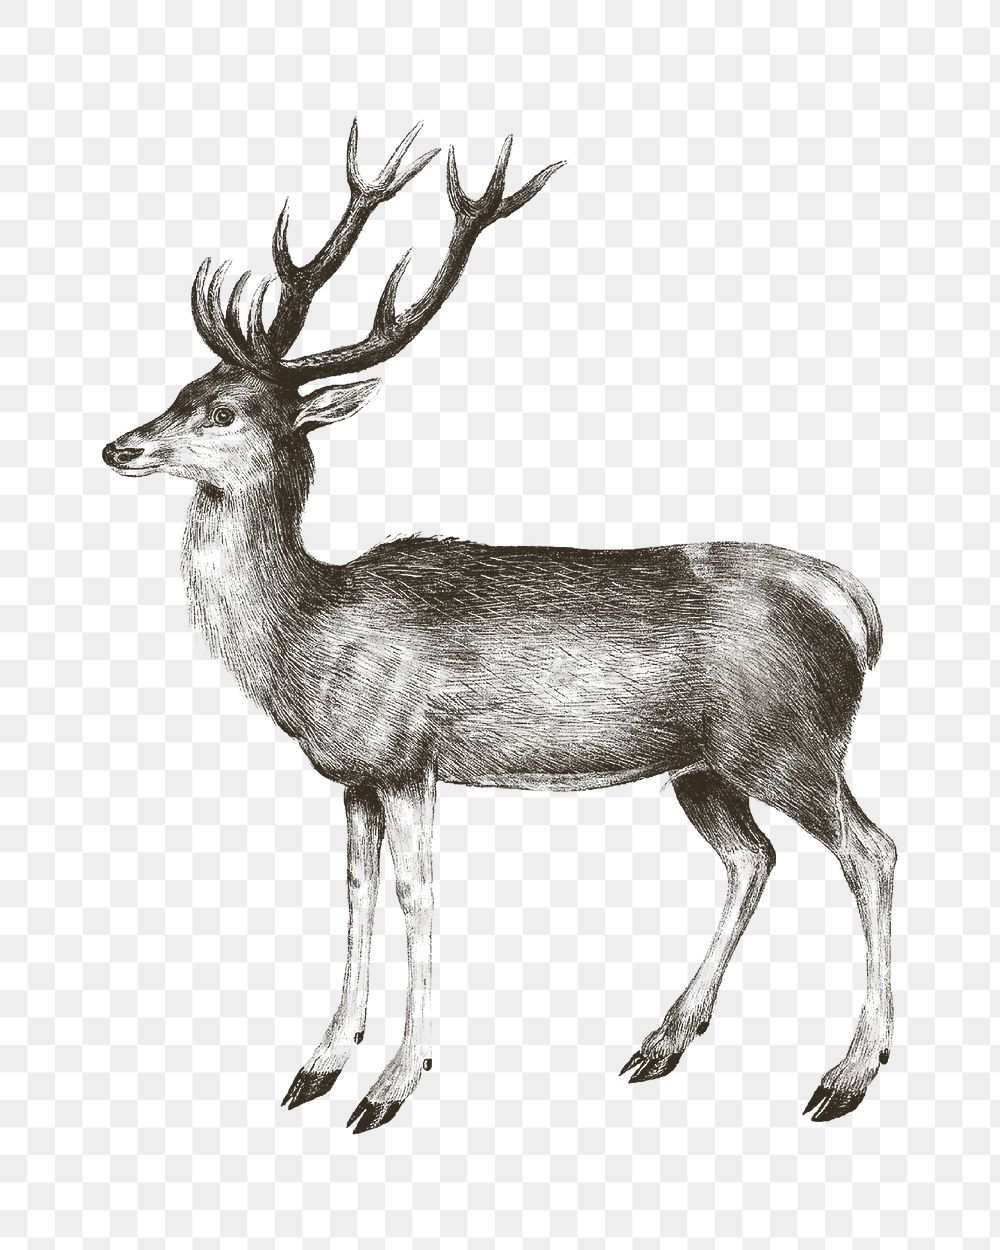 Deer png vintage illustration, transparent background